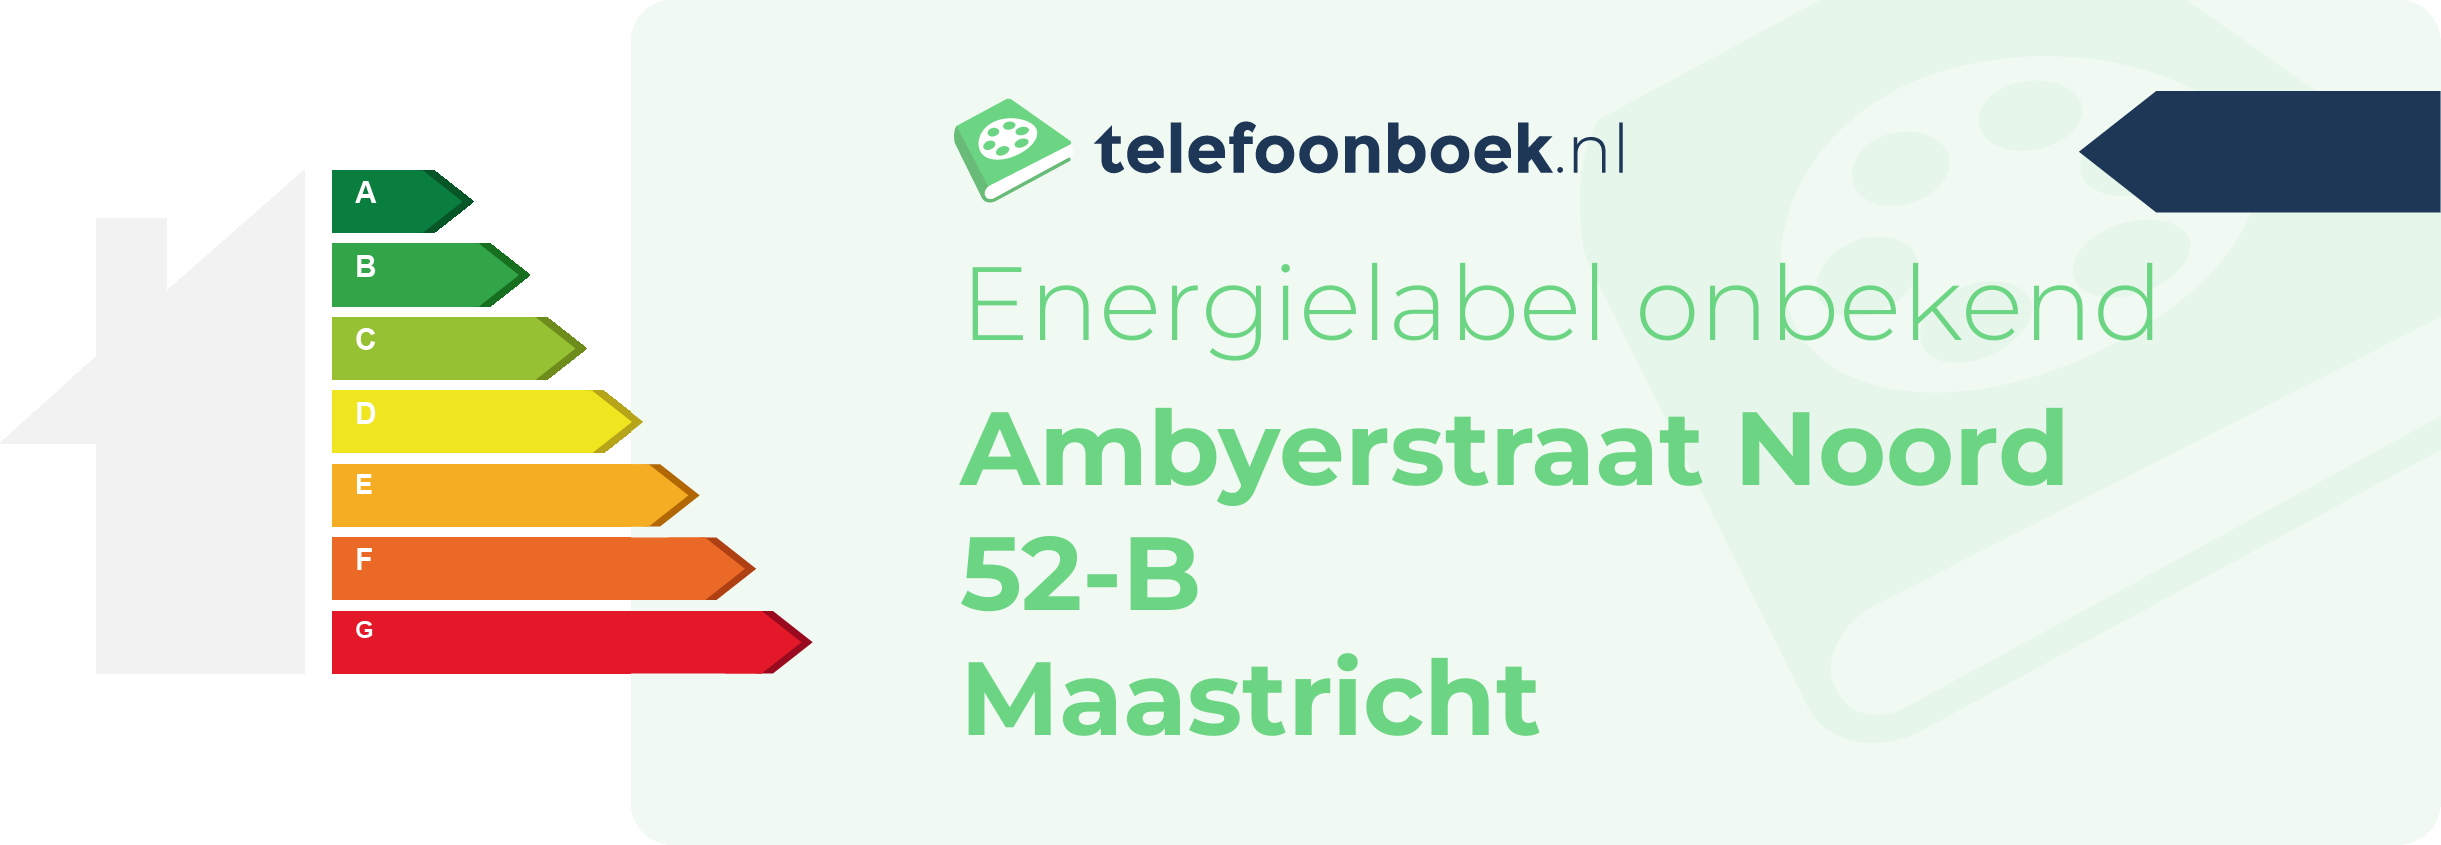 Energielabel Ambyerstraat Noord 52-B Maastricht